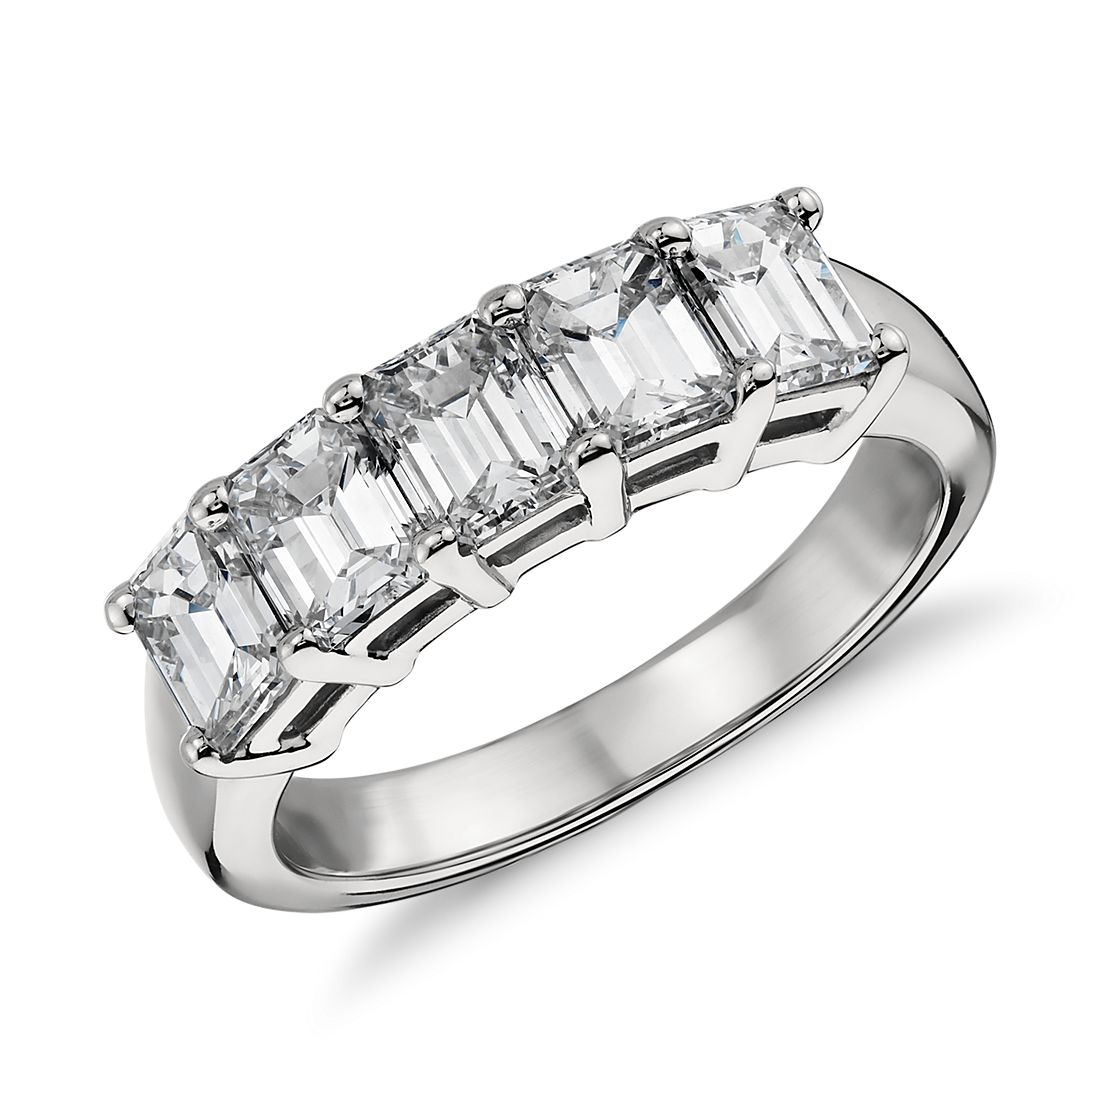 Classic Emerald Cut Five Stone Diamond Ring in Platinum (2 ct. tw.)